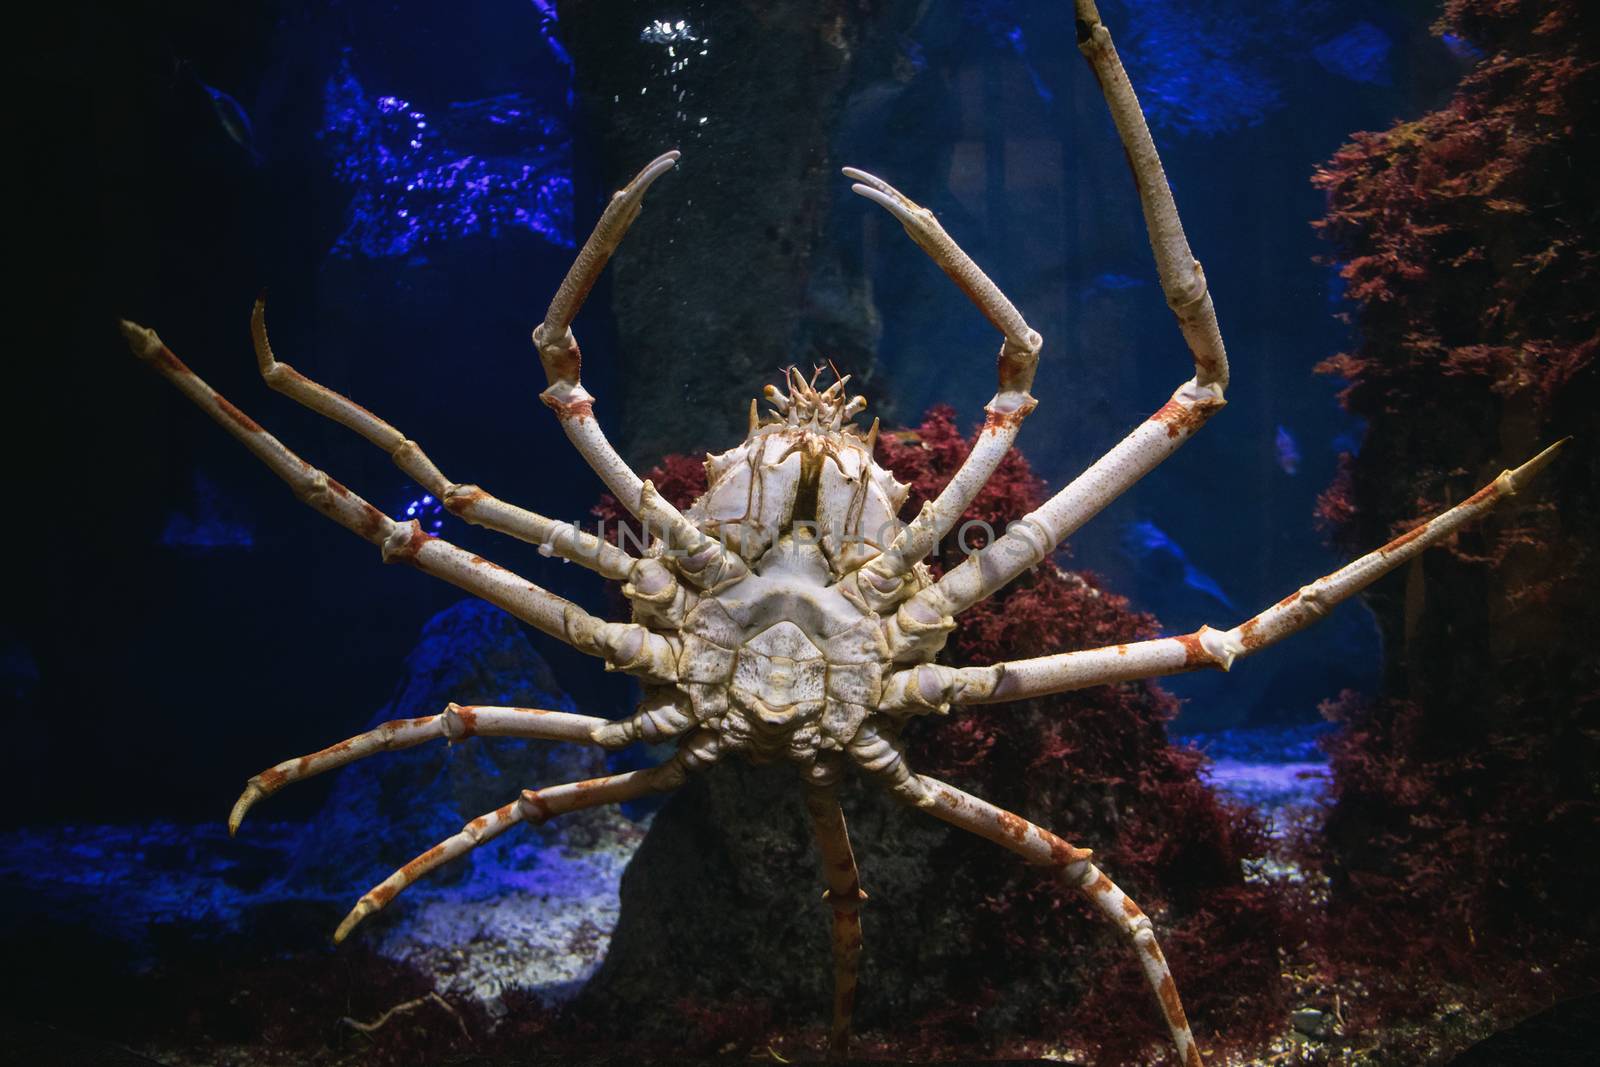 Giant sea spider at aquarium in Zoo.